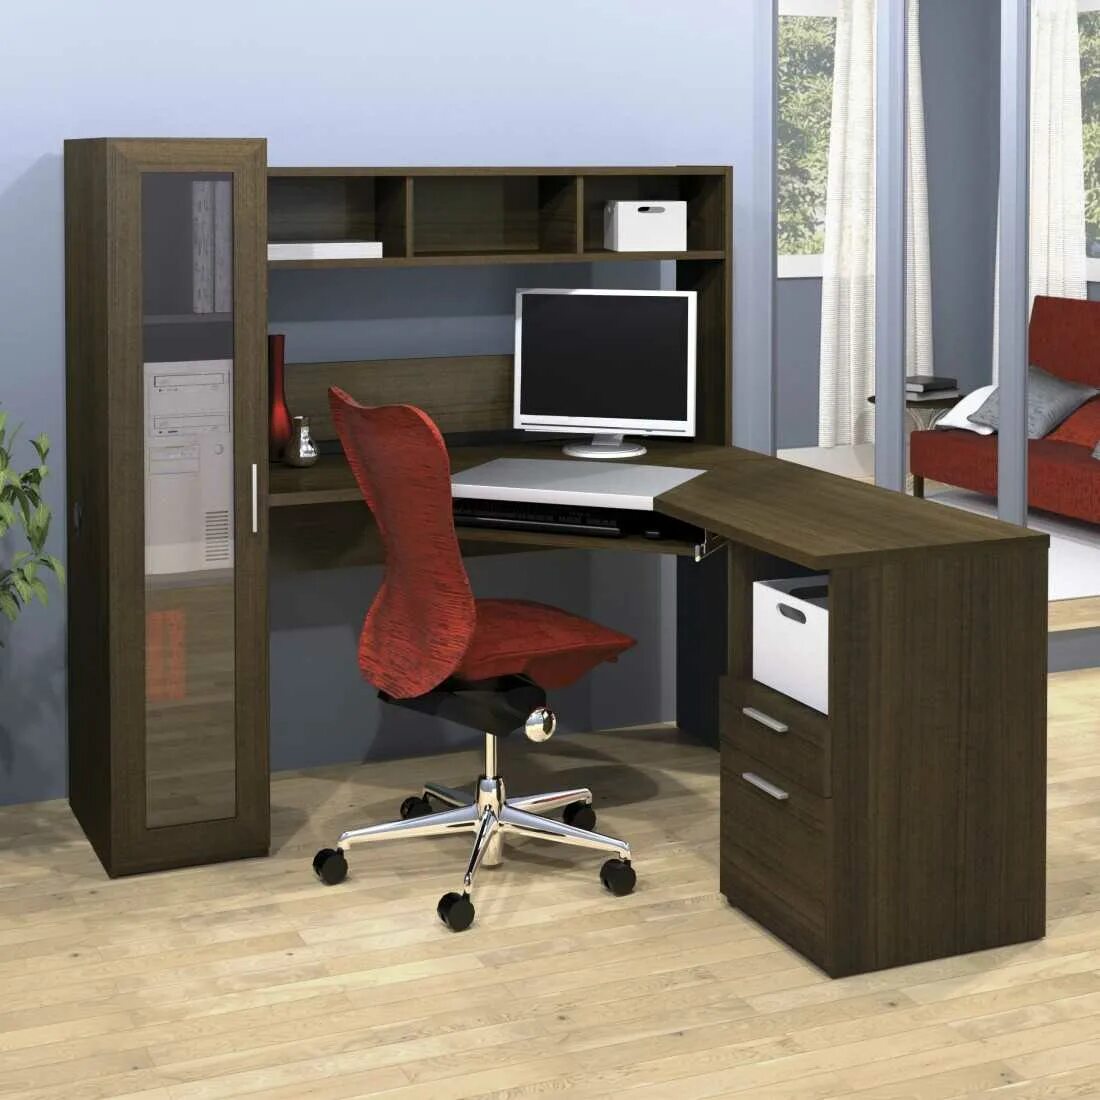 Стол угловой правый. Компьютерный стол «Corner Desk». Стол компьютерный ФСК 107. Угловой компьютерный стол. Стол компьютерный угловой офисный.